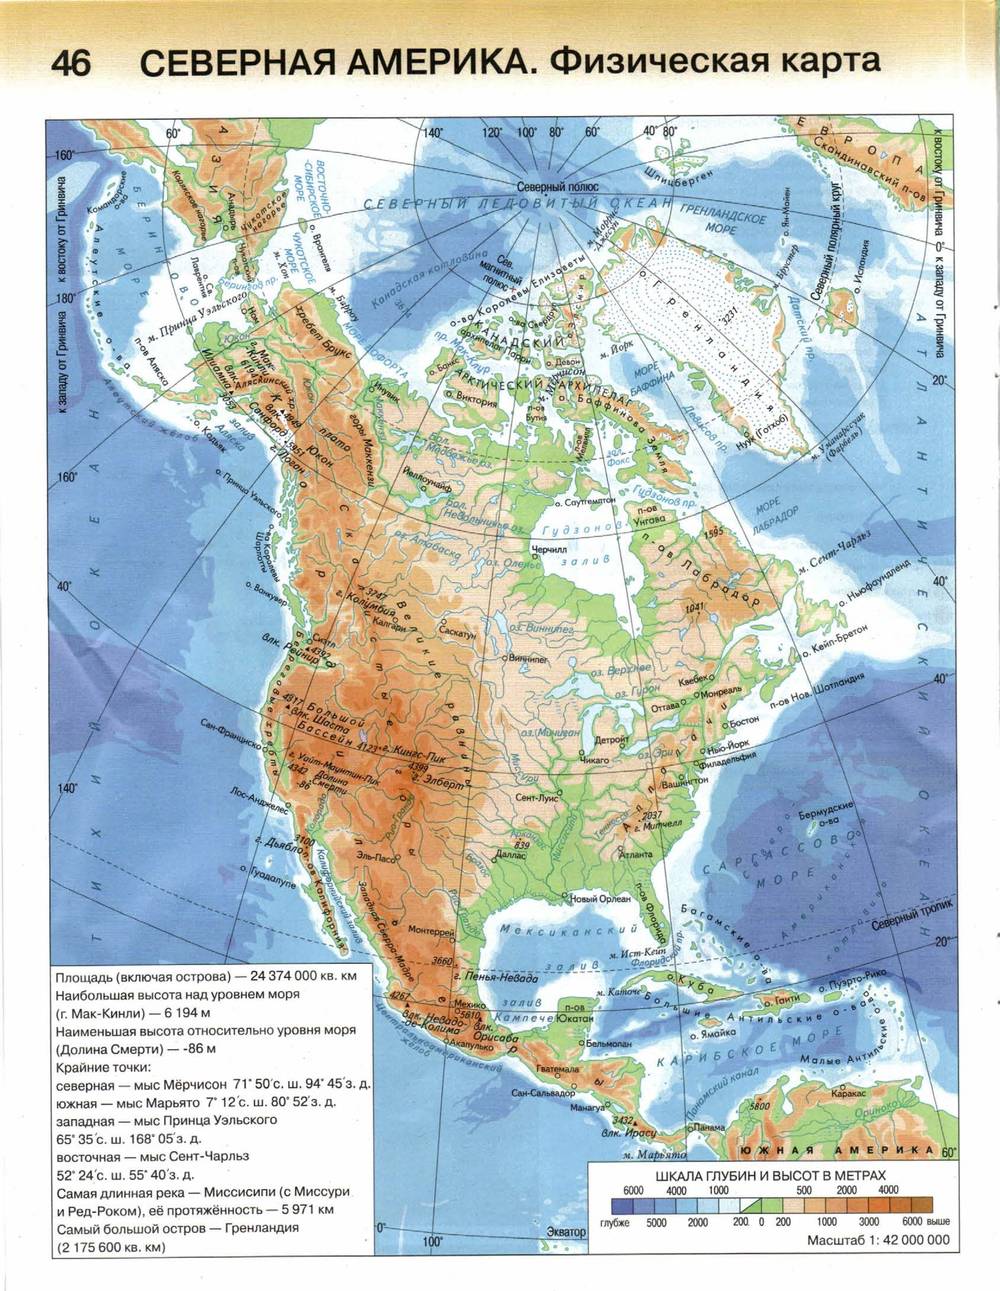 Высшая точка северной америки на карте